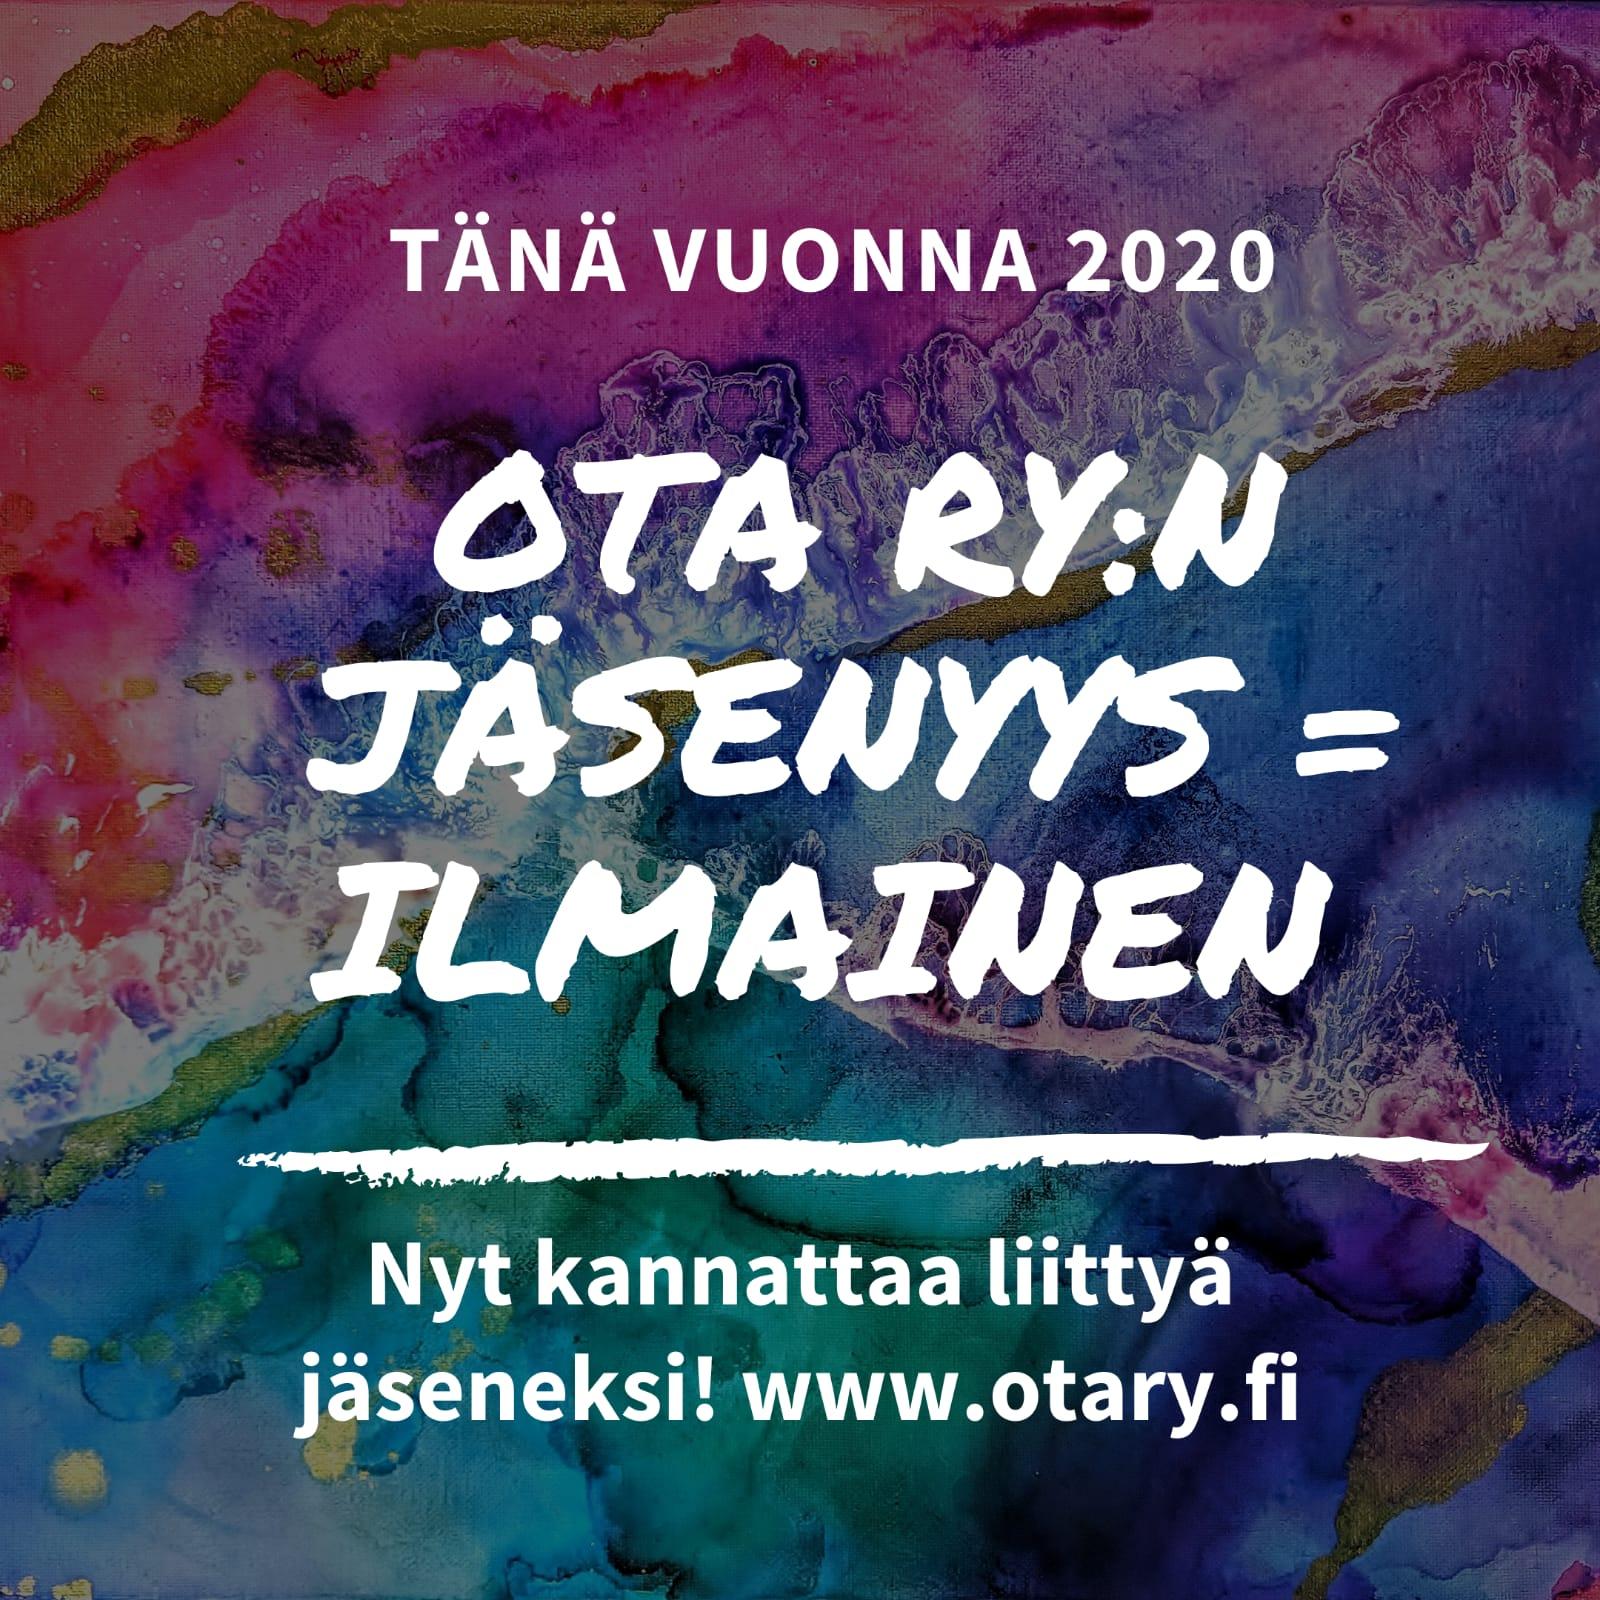 Ota ry:n jäsenyys on ilmainen. Nyt kannattaa liittyä jäseneksi www.otary.fi